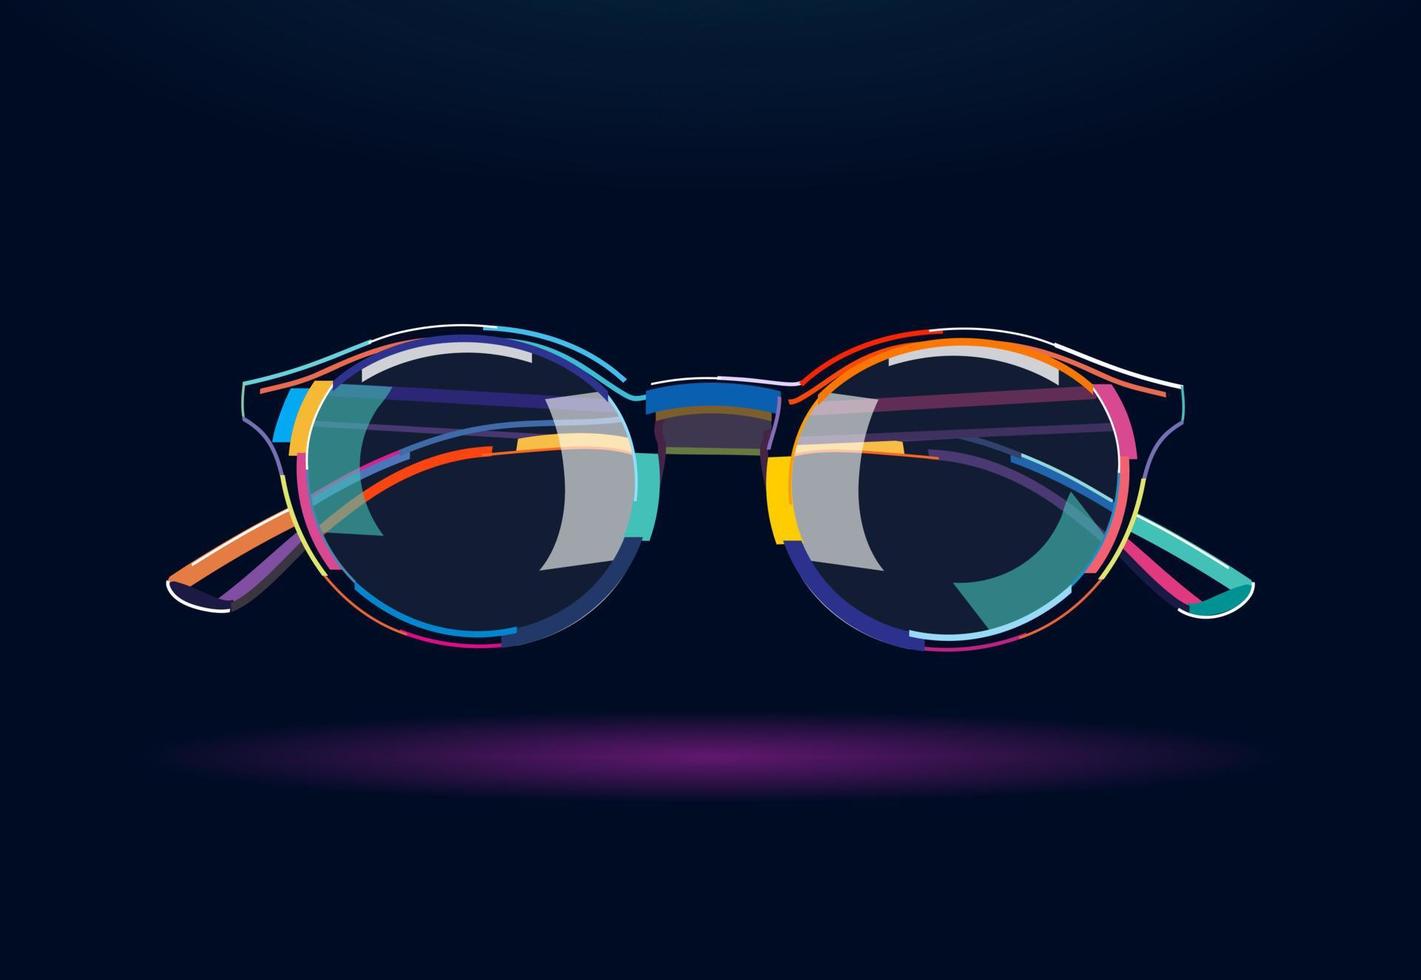 occhiali eleganti con montatura arrotondata. occhiali da sole, disegno astratto e colorato. illustrazione vettoriale di vernici